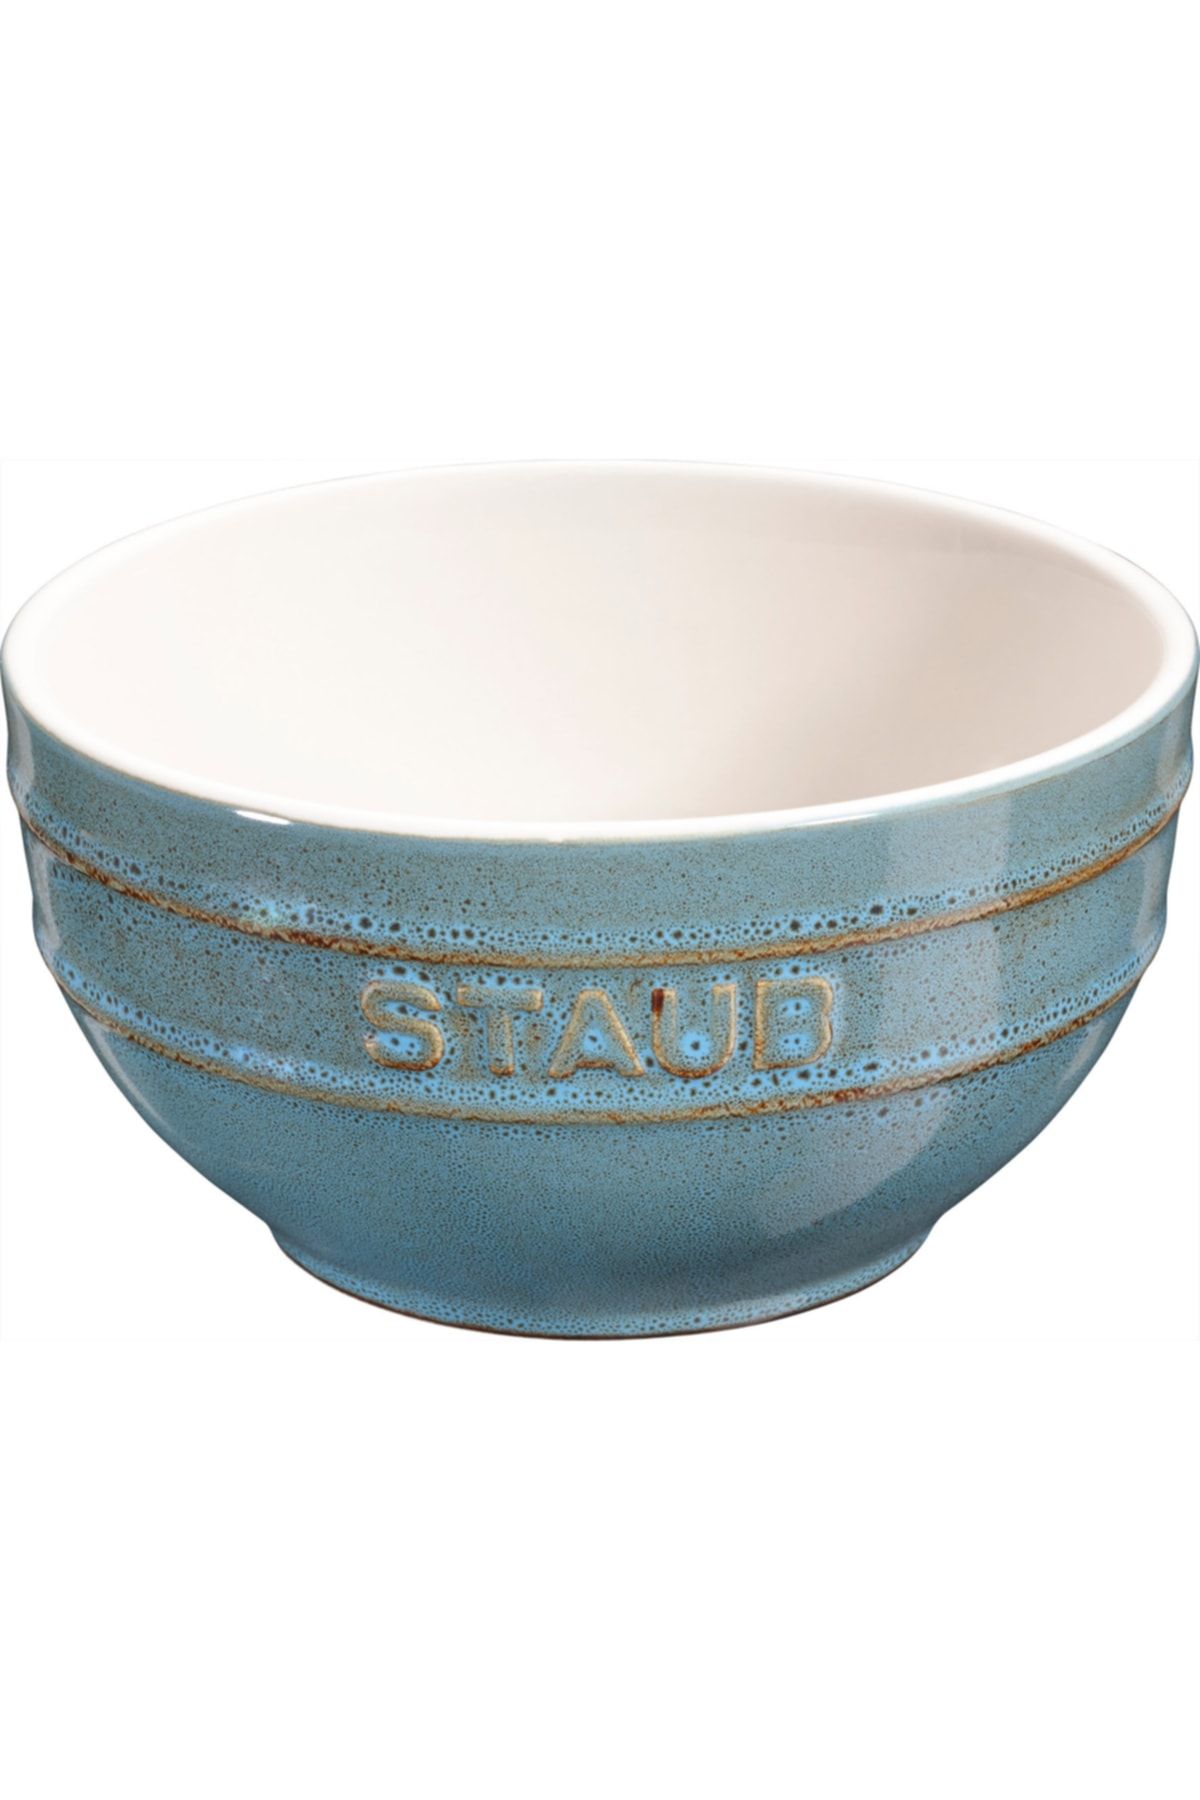 STAUB Ceramique Kase | Seramik | 14 Cm